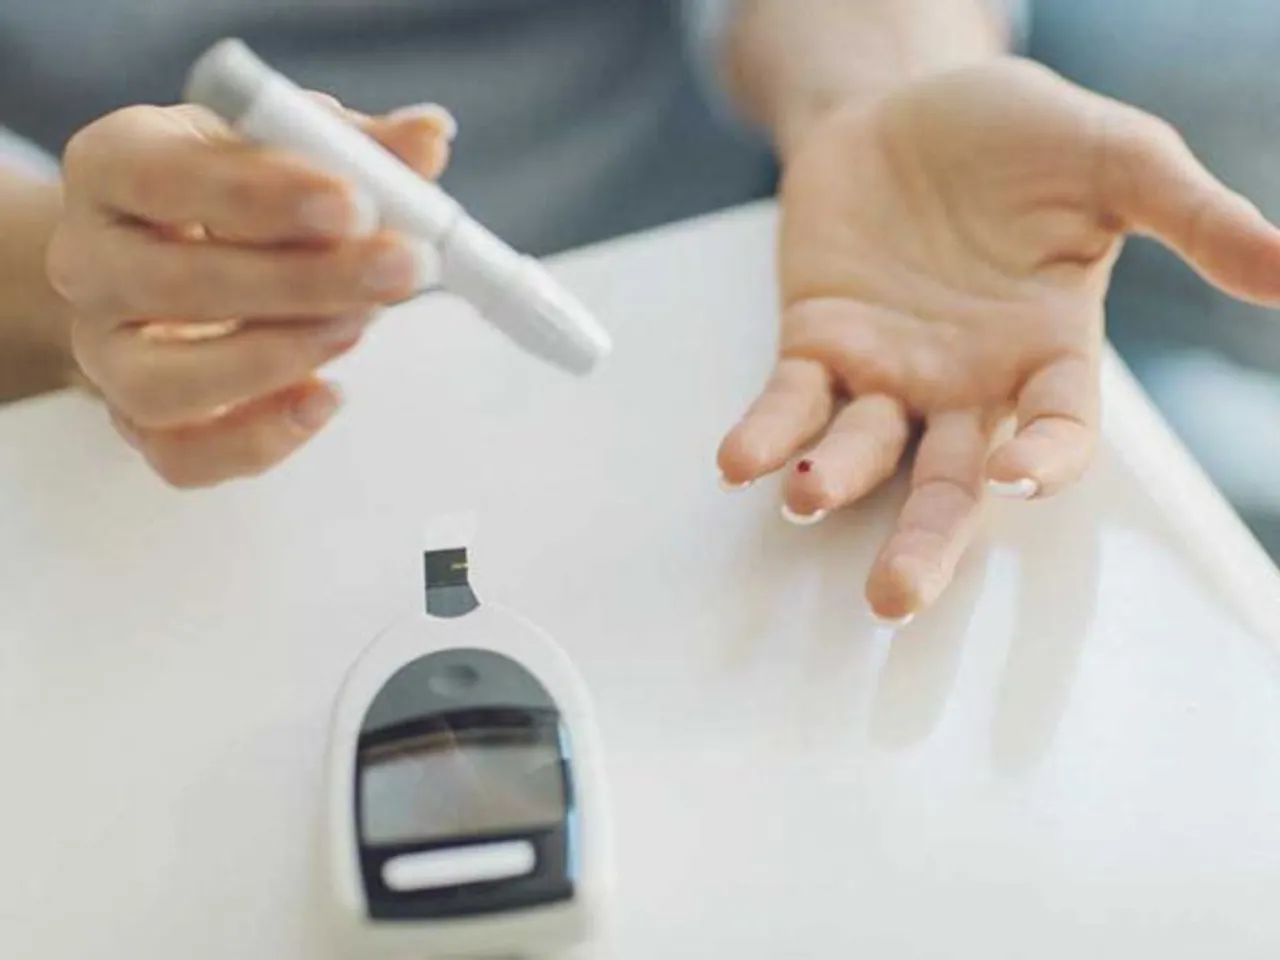 Exercise in Diabetes: जानिए क्यों डायबिटीज में जरुरी हैं एक्सरसाइज करना